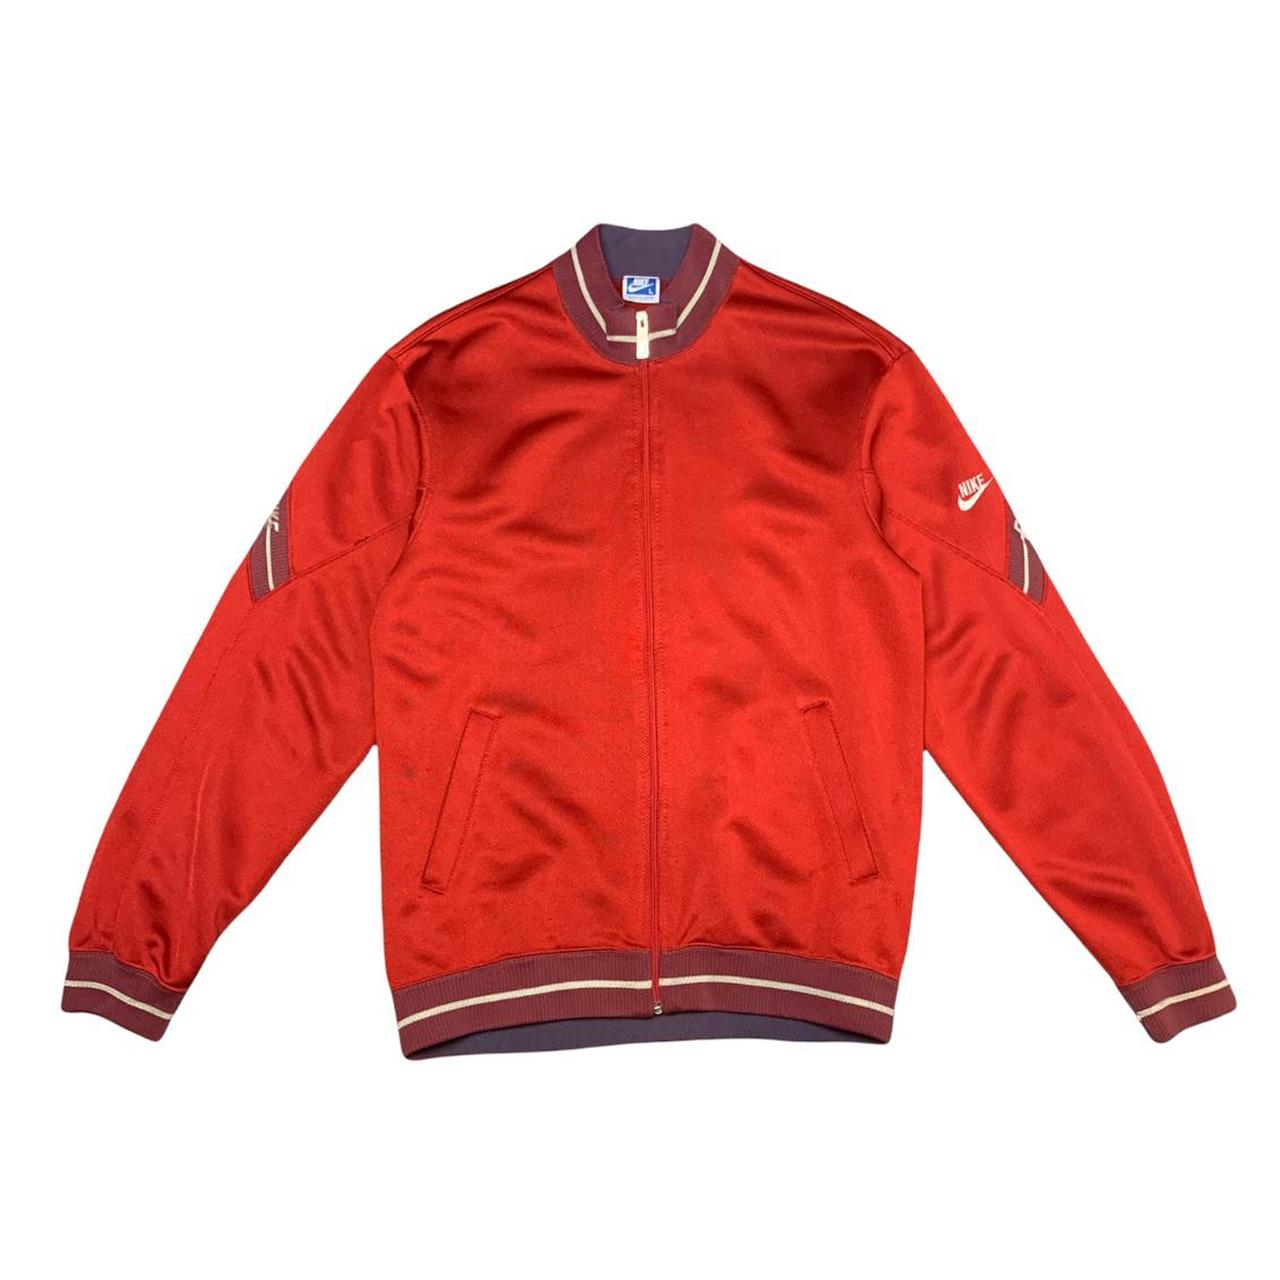 Vintage Red and Blue Track Jacket Japan